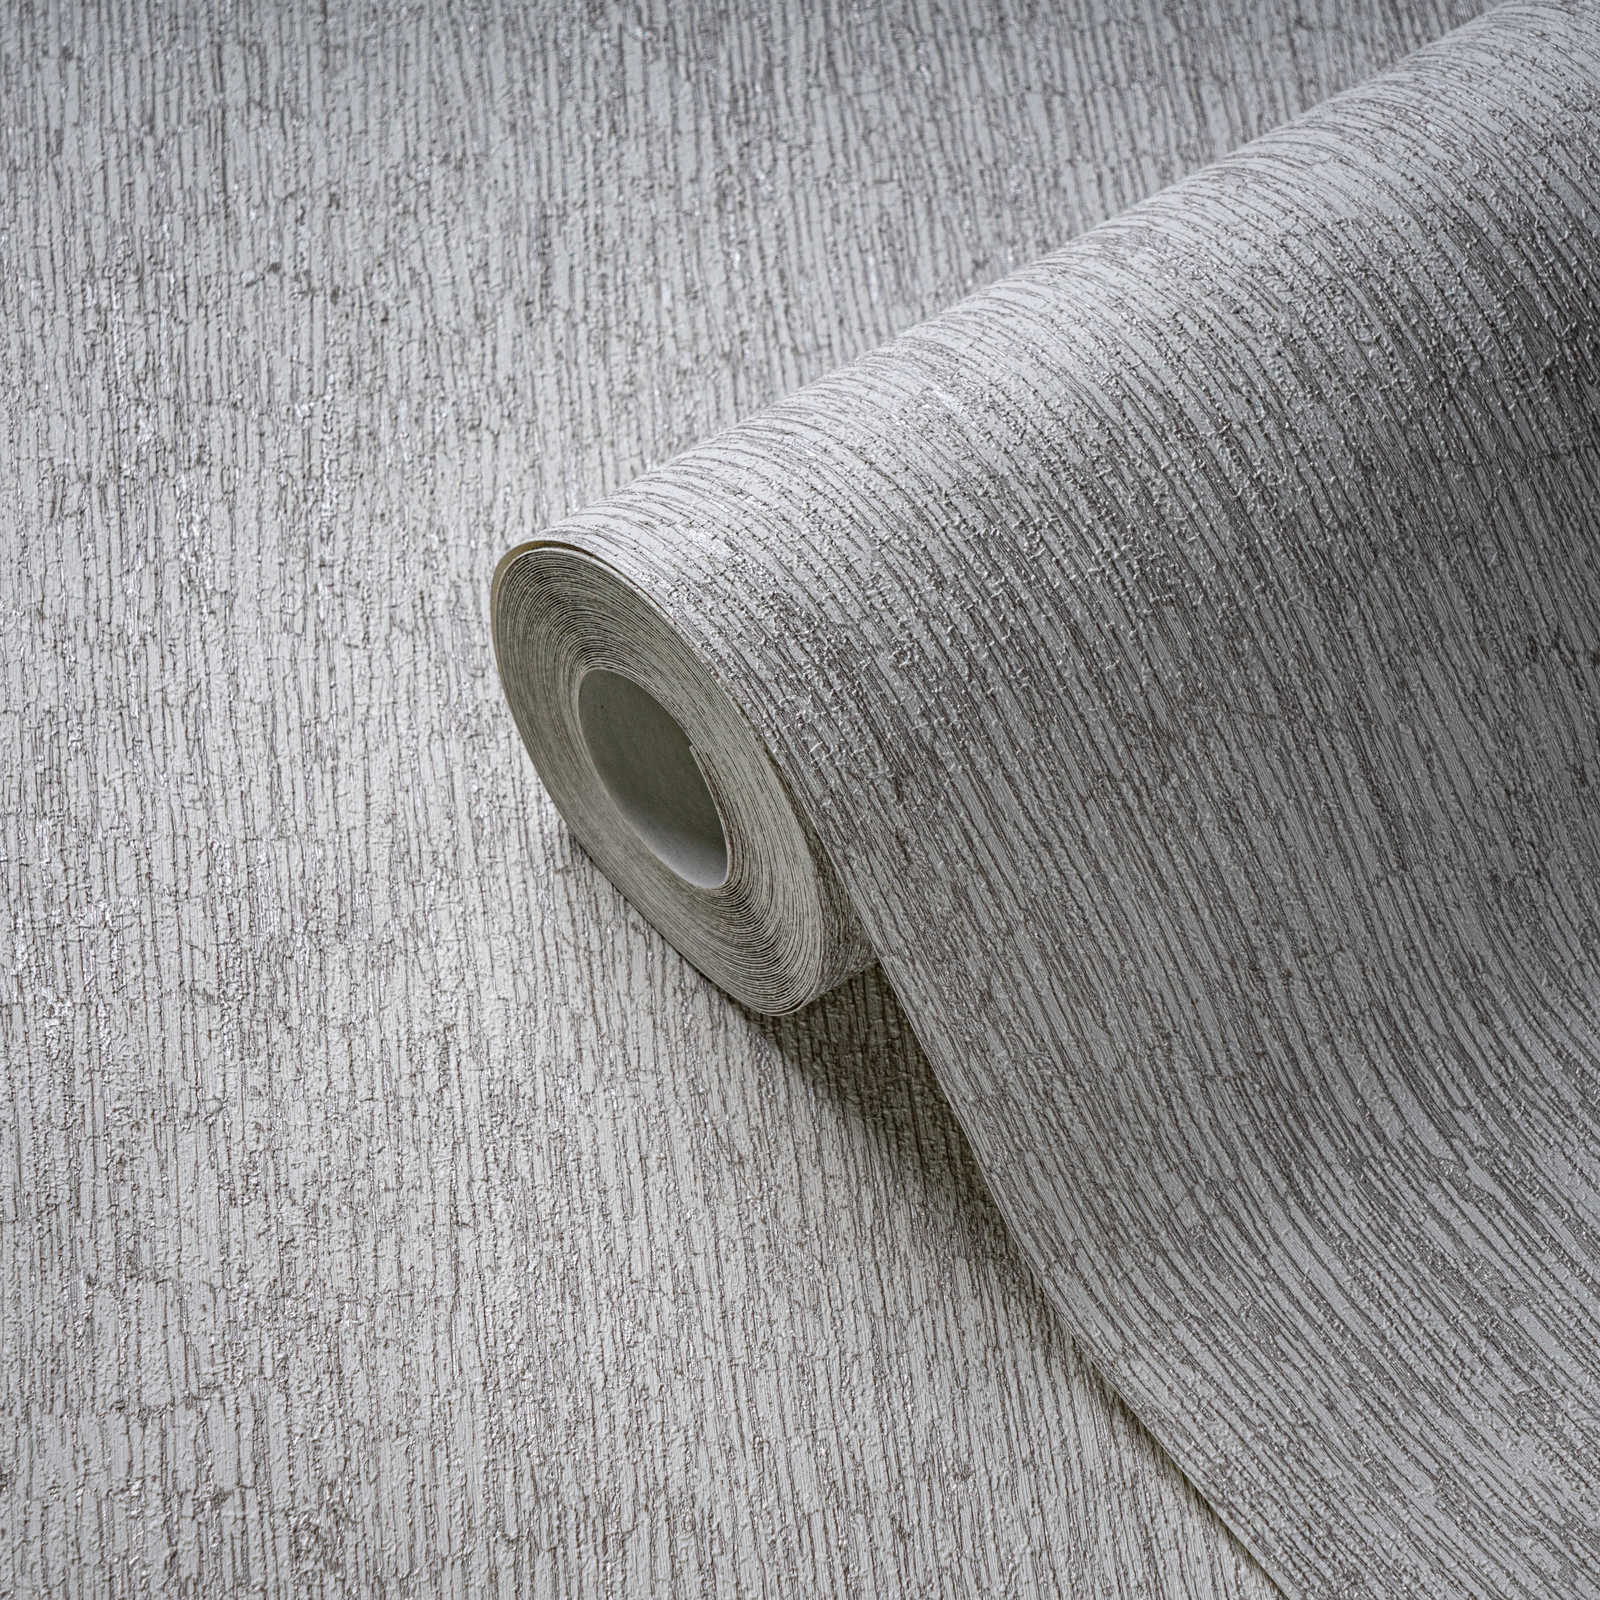             Vliestapete in Textiloptik leicht glänzend – Weiß, Grau, Silber
        